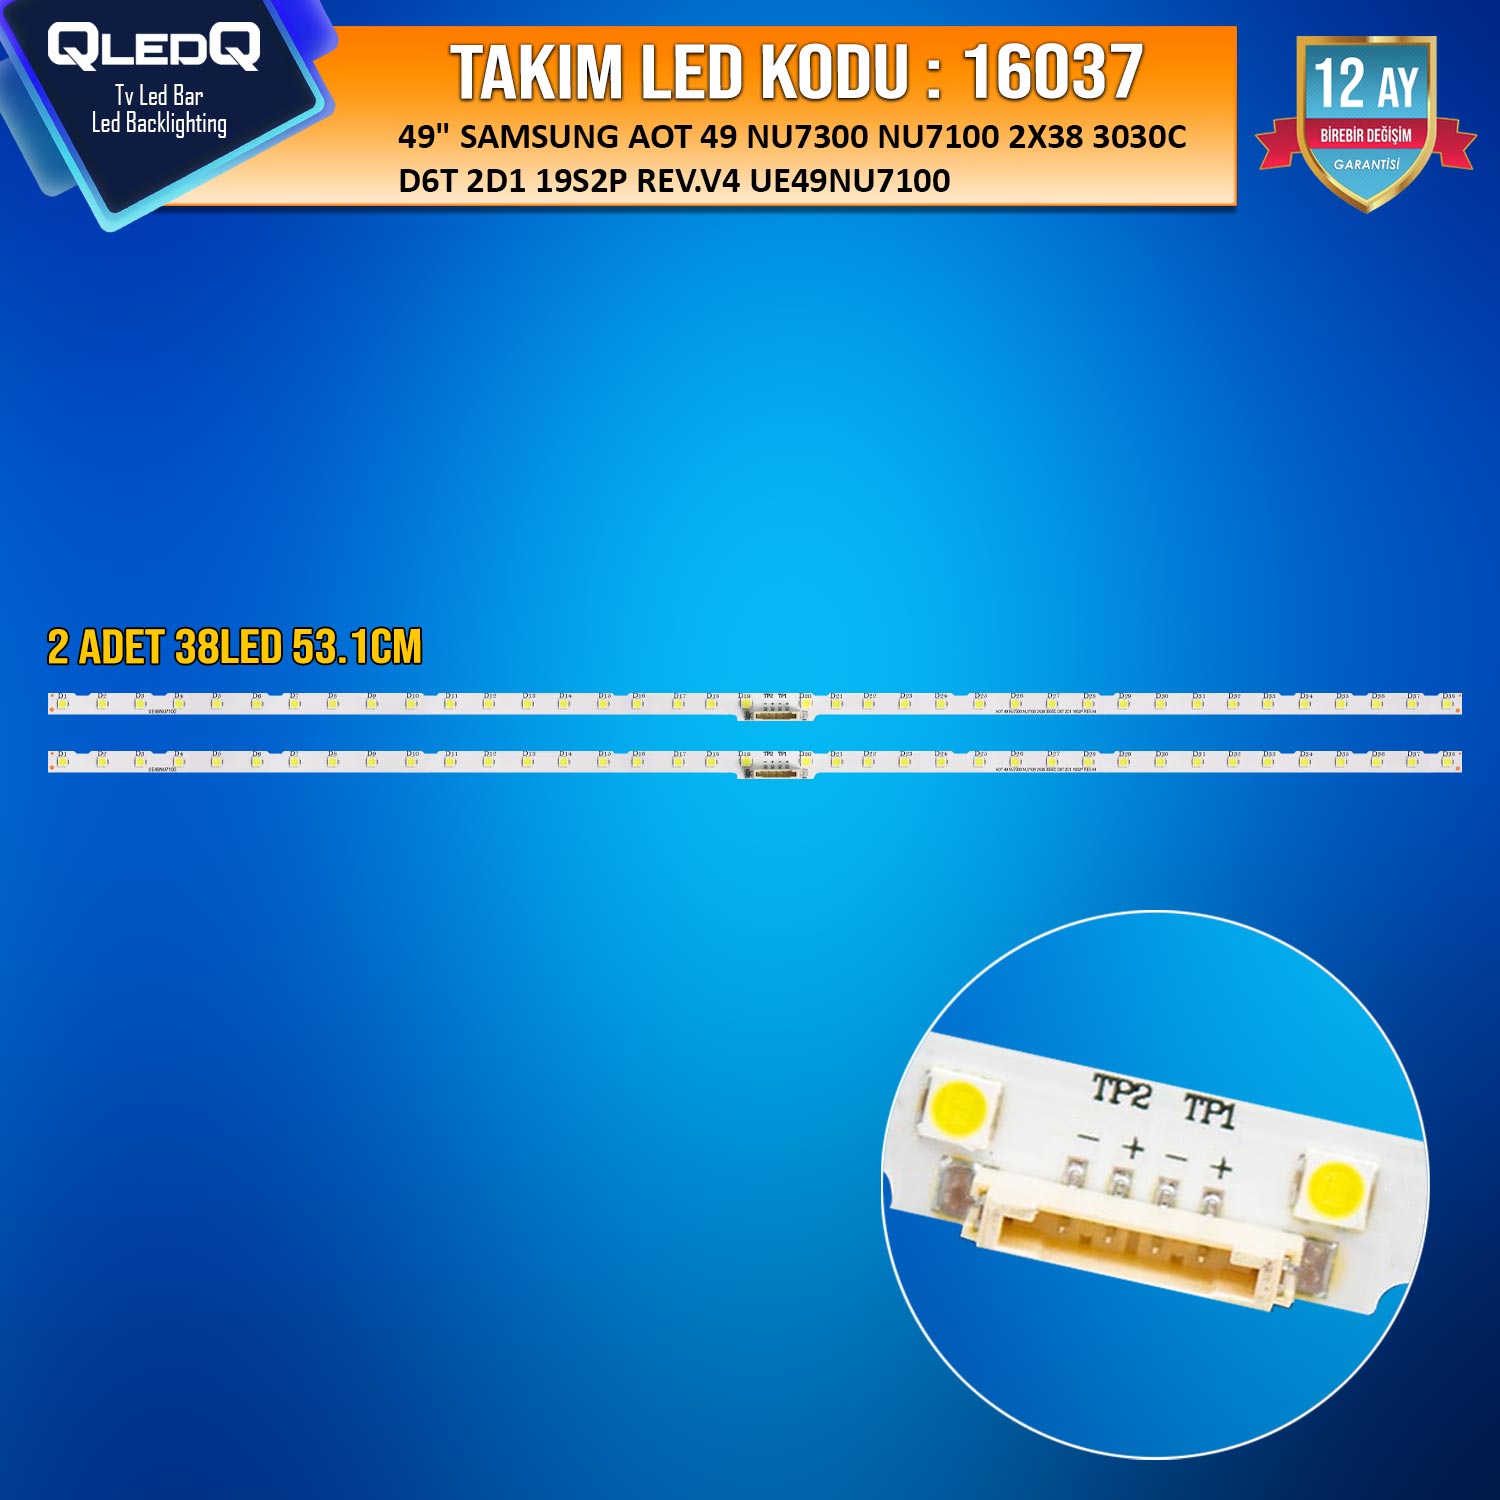 TAKIM LED-137 (2XPCB) 49 SAMSUNG AOT 49 NU7300 NU7100 2X38 3030C D6T 2D1 19S2P REV.V4 UE49NU7100